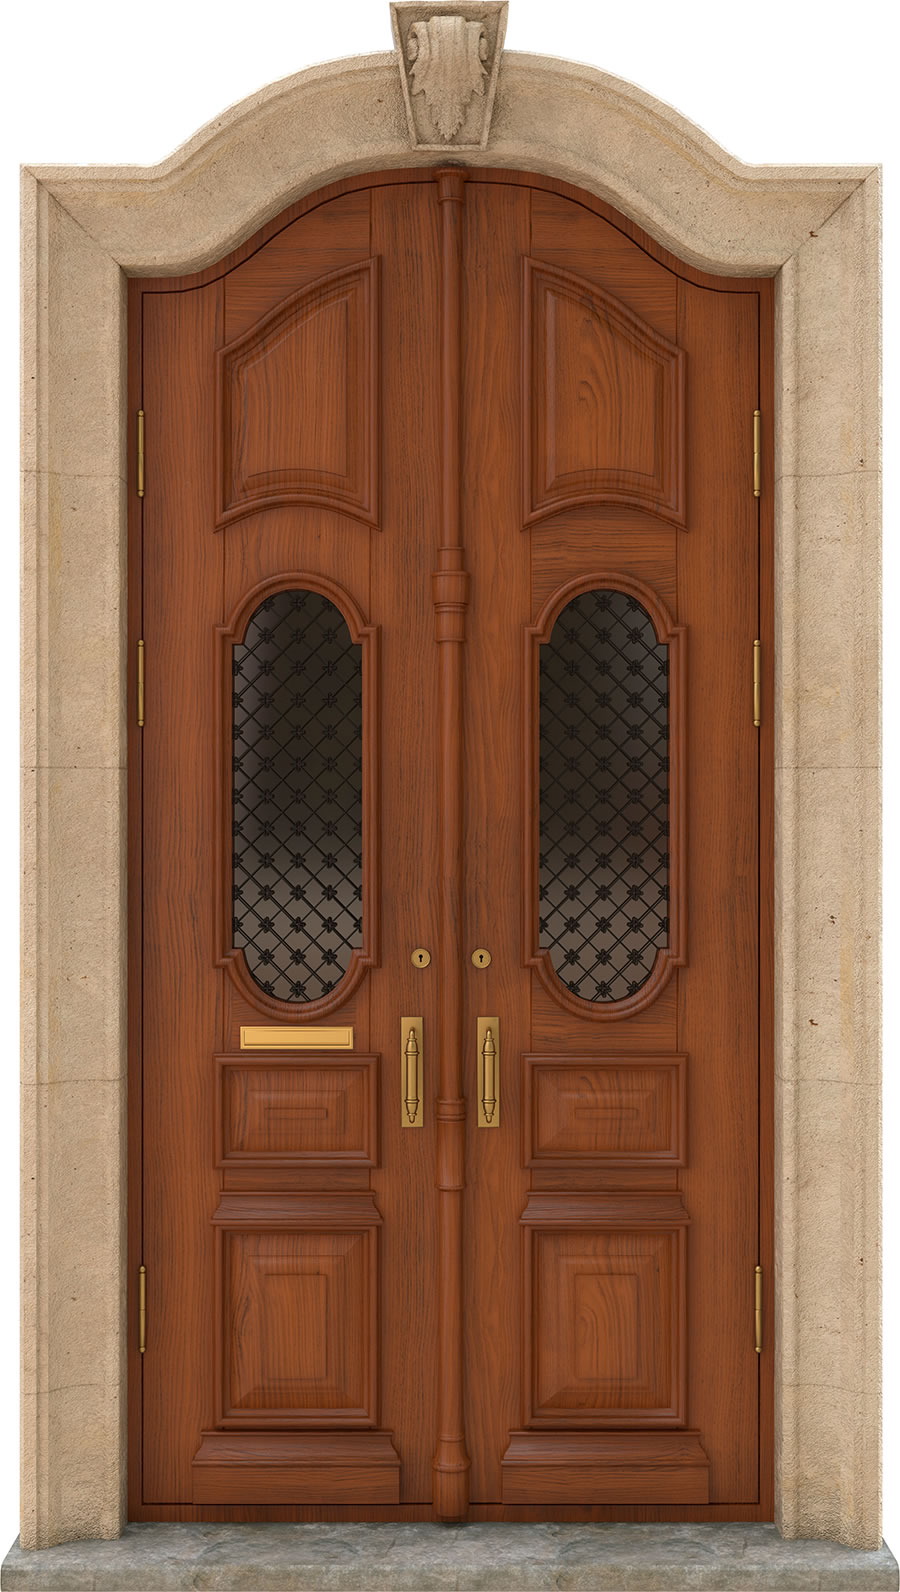 Historische Eingangstür aus braunem Holz mit Umrandung aus Naturstein